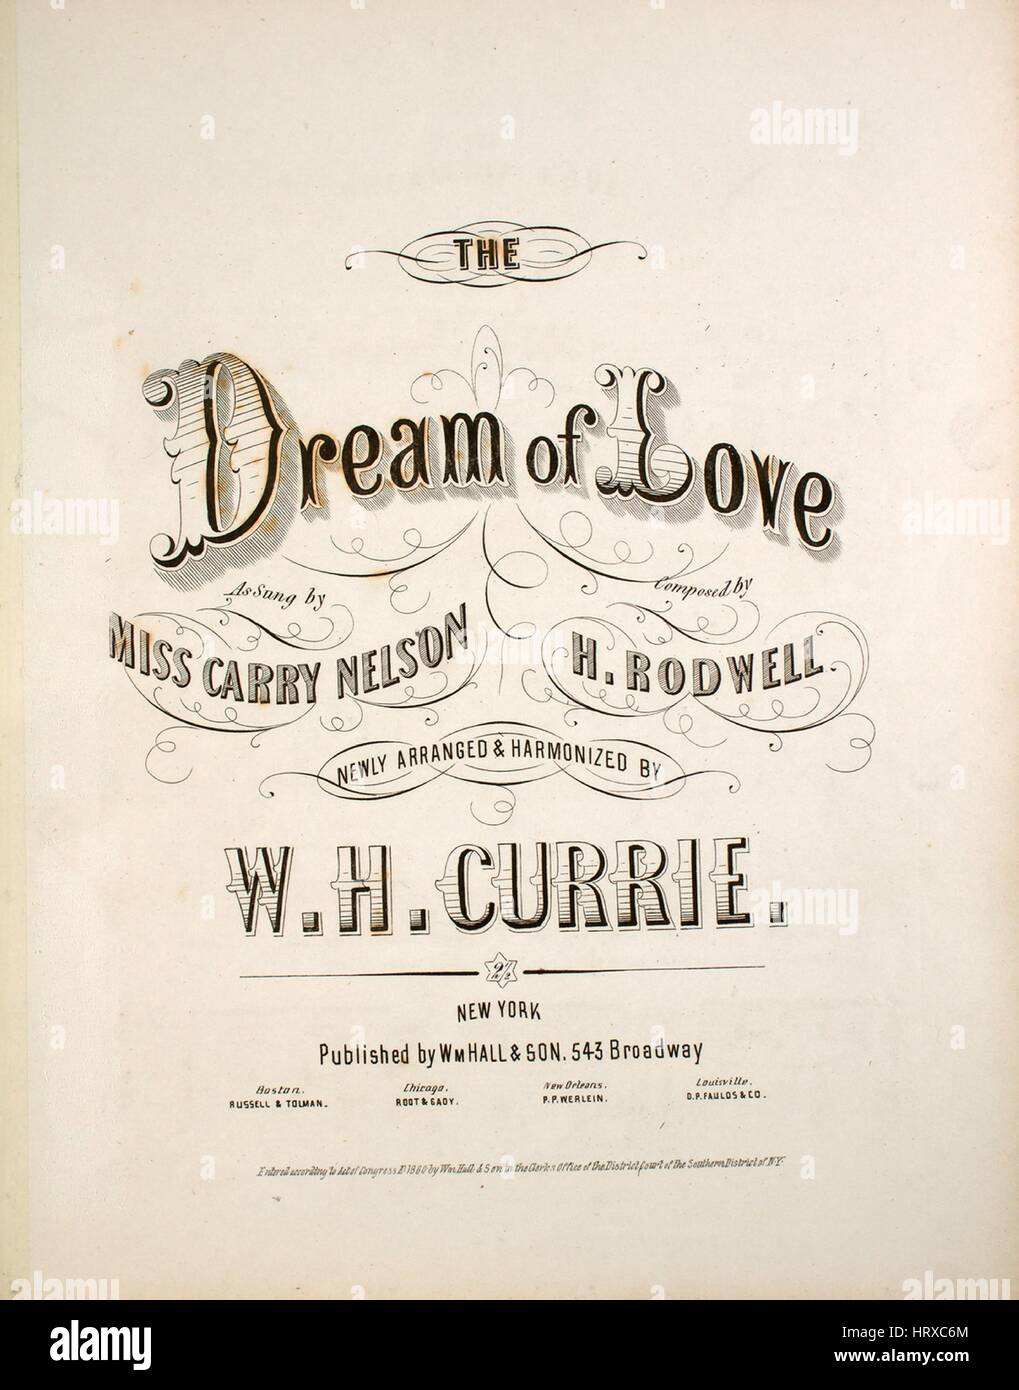 Foglio di musica immagine copertina della canzone Il sogno d'amore, con  paternitã originale note lettura composta da H Rodwell disposto nuovamente  e armonizzati da WH Currie, Stati Uniti, 1860. L'editore è elencato